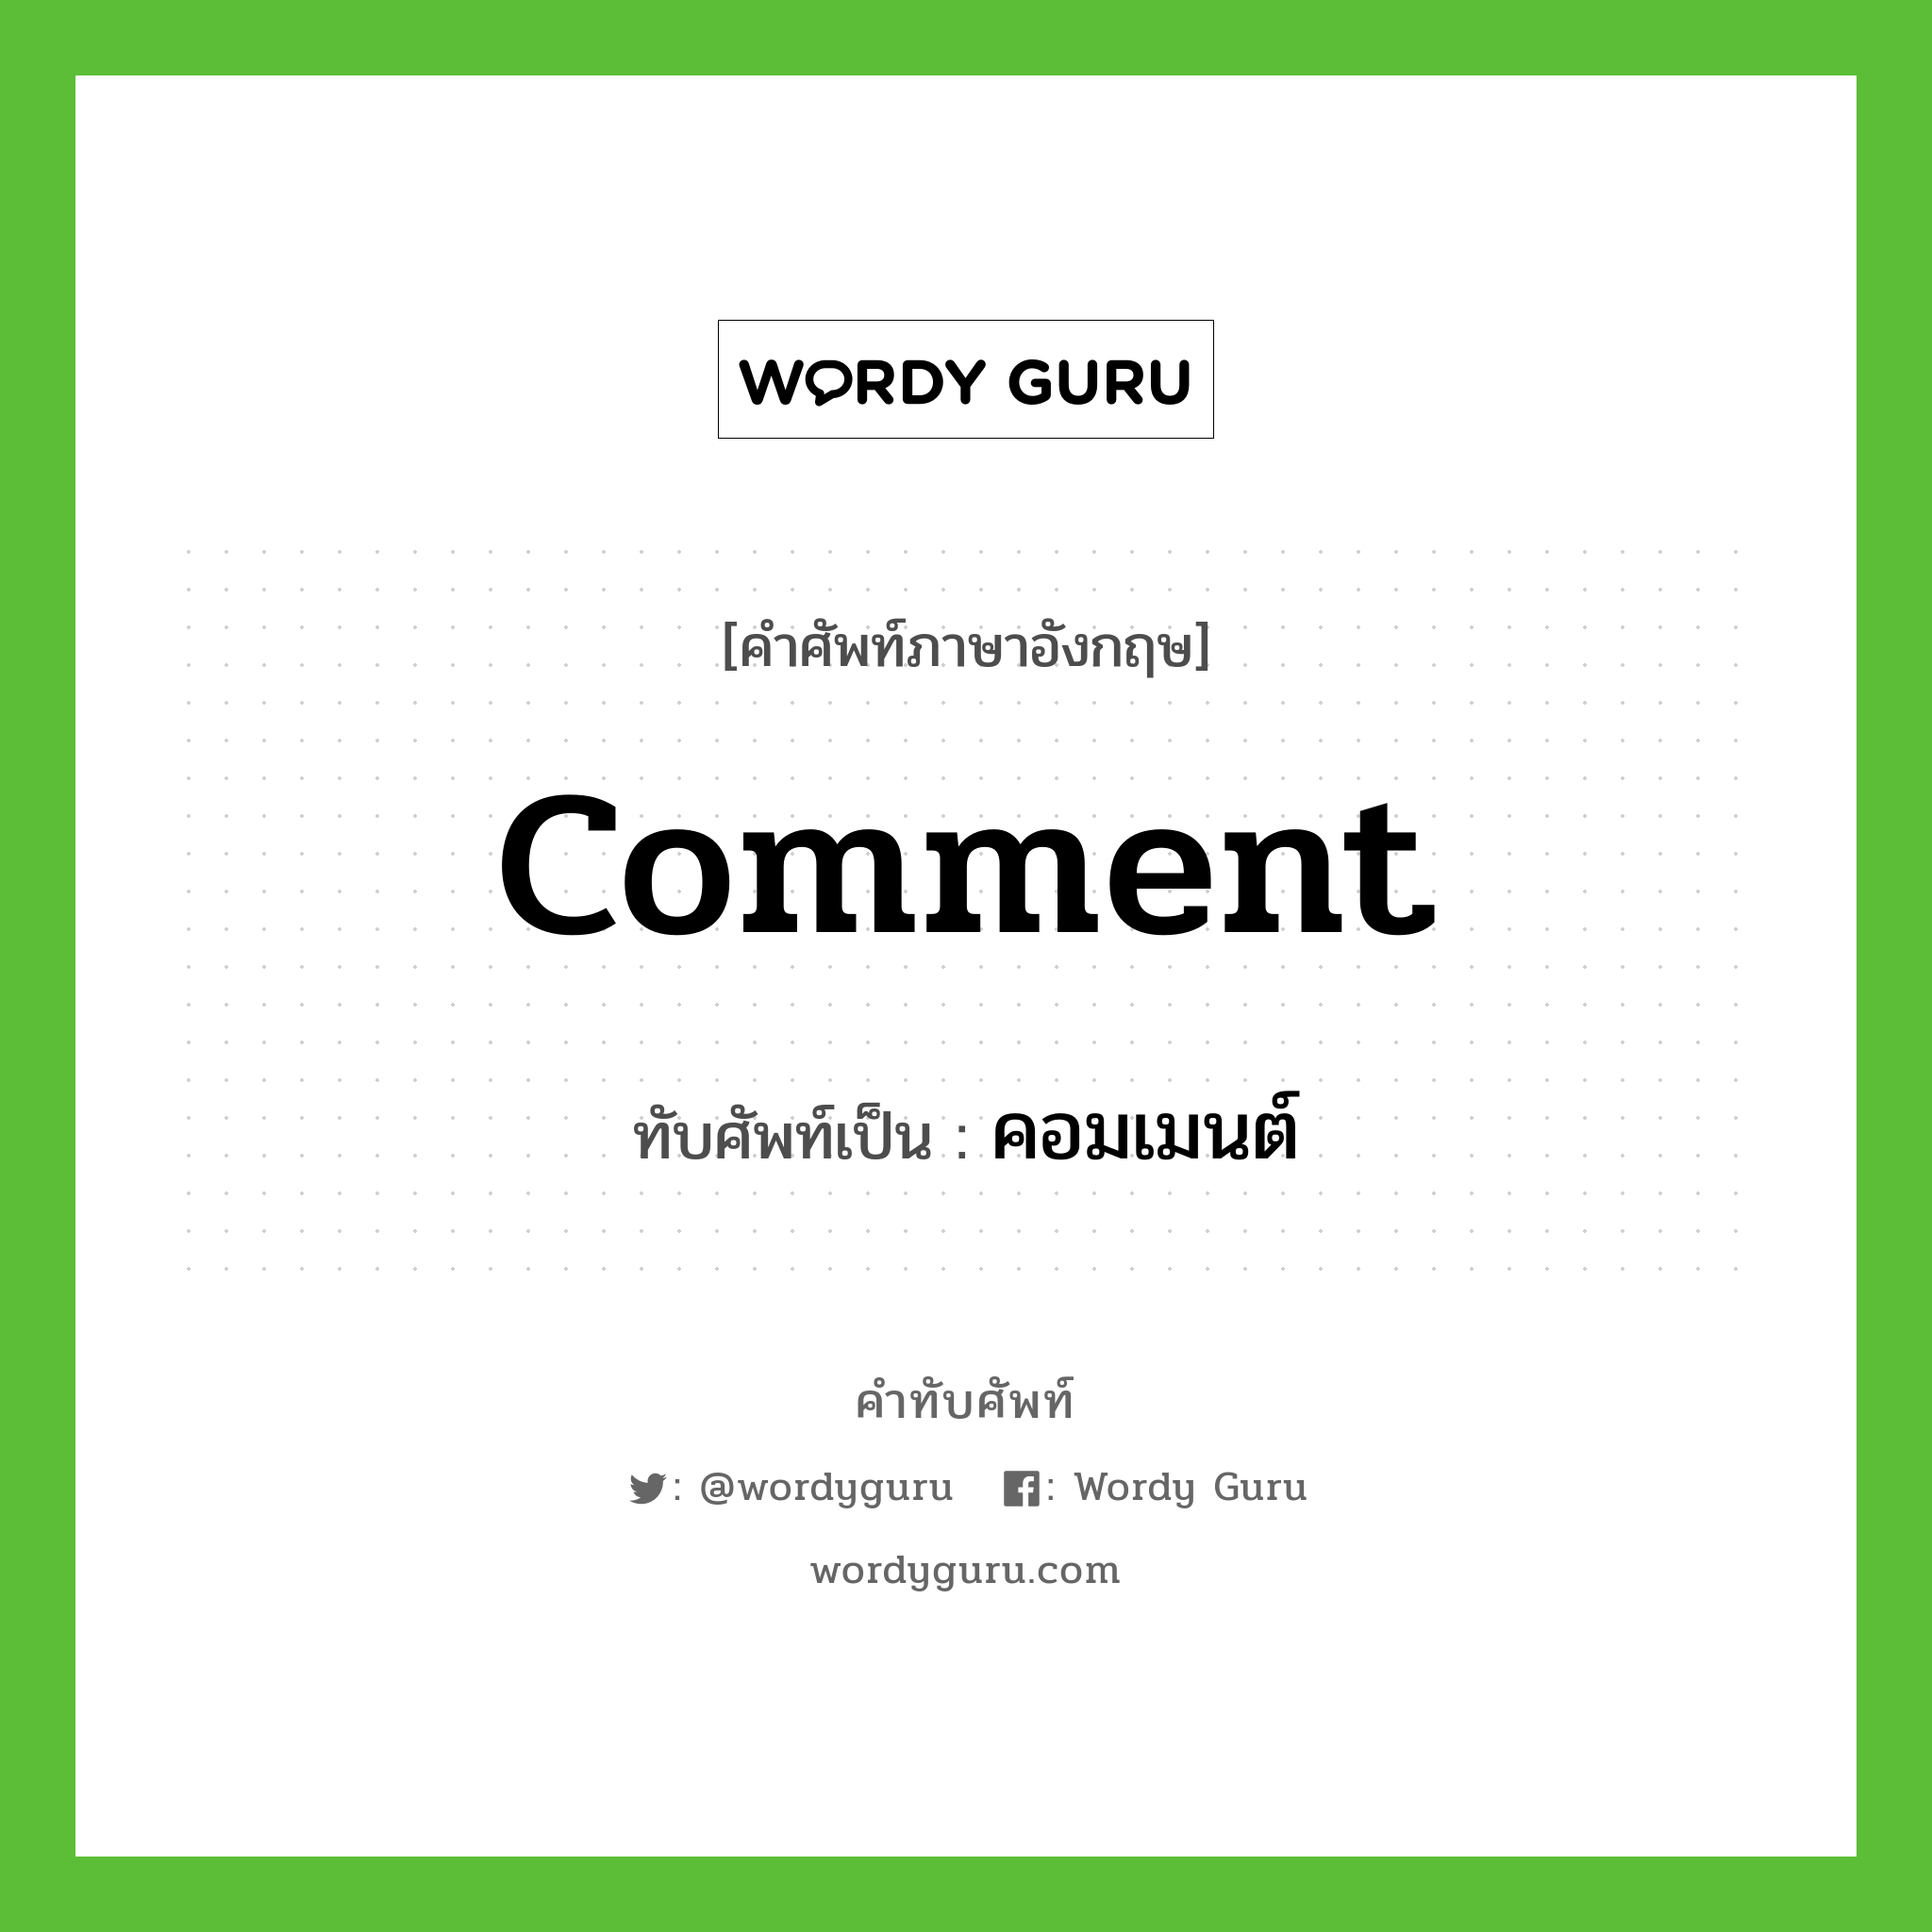 comment เขียนเป็นคำไทยว่าอะไร?, คำศัพท์ภาษาอังกฤษ comment ทับศัพท์เป็น คอมเมนต์